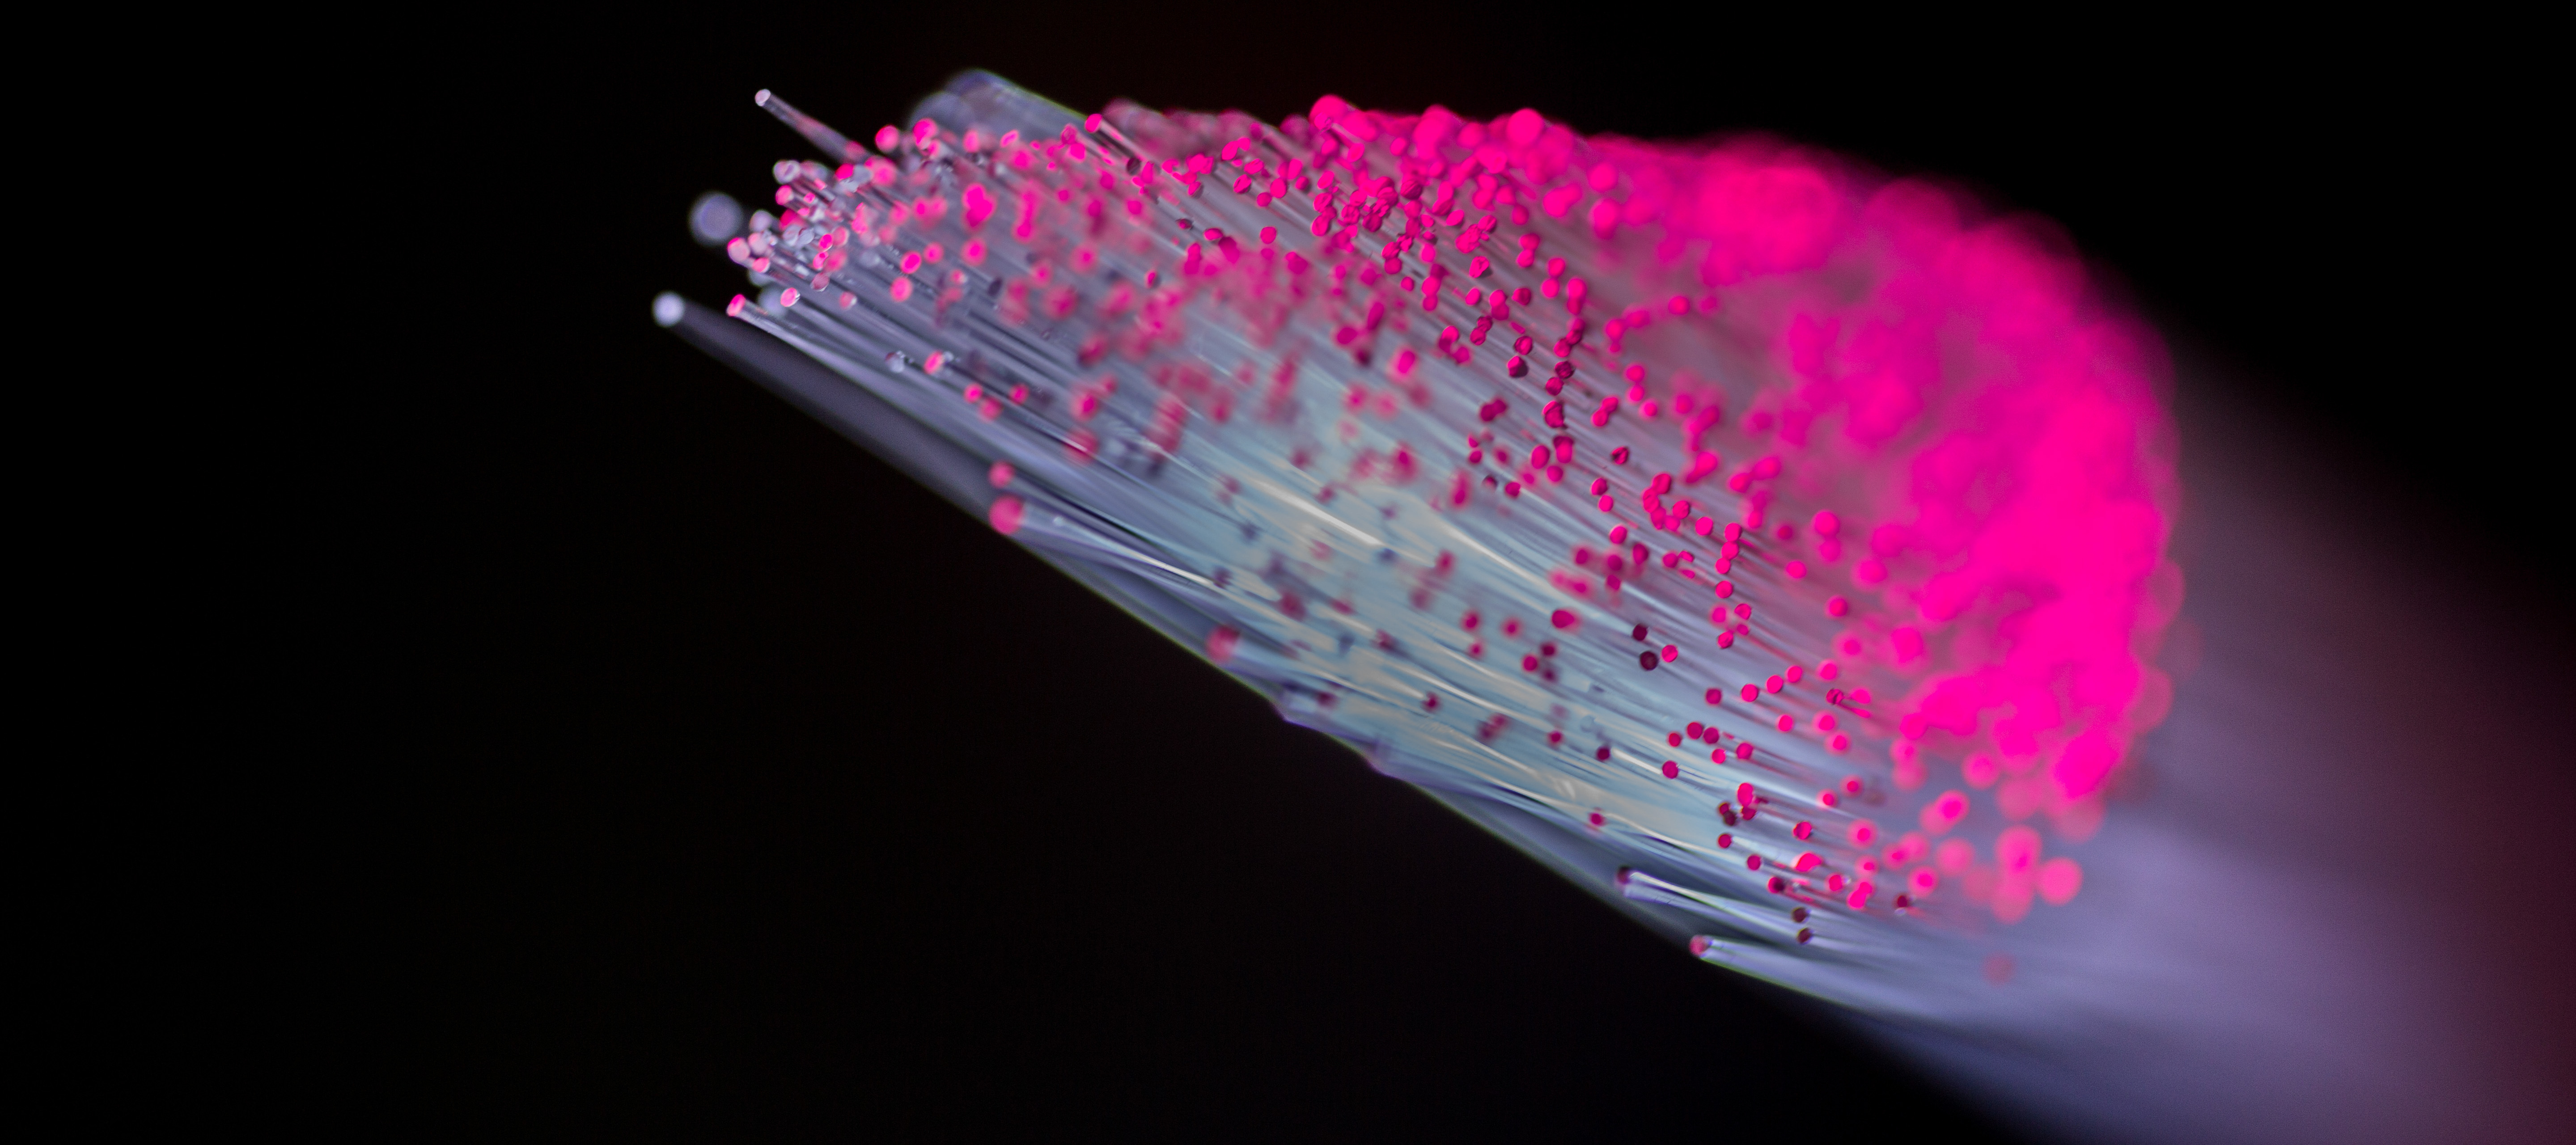 [Nieuws] T-Mobile geeft gas met supersnel glas